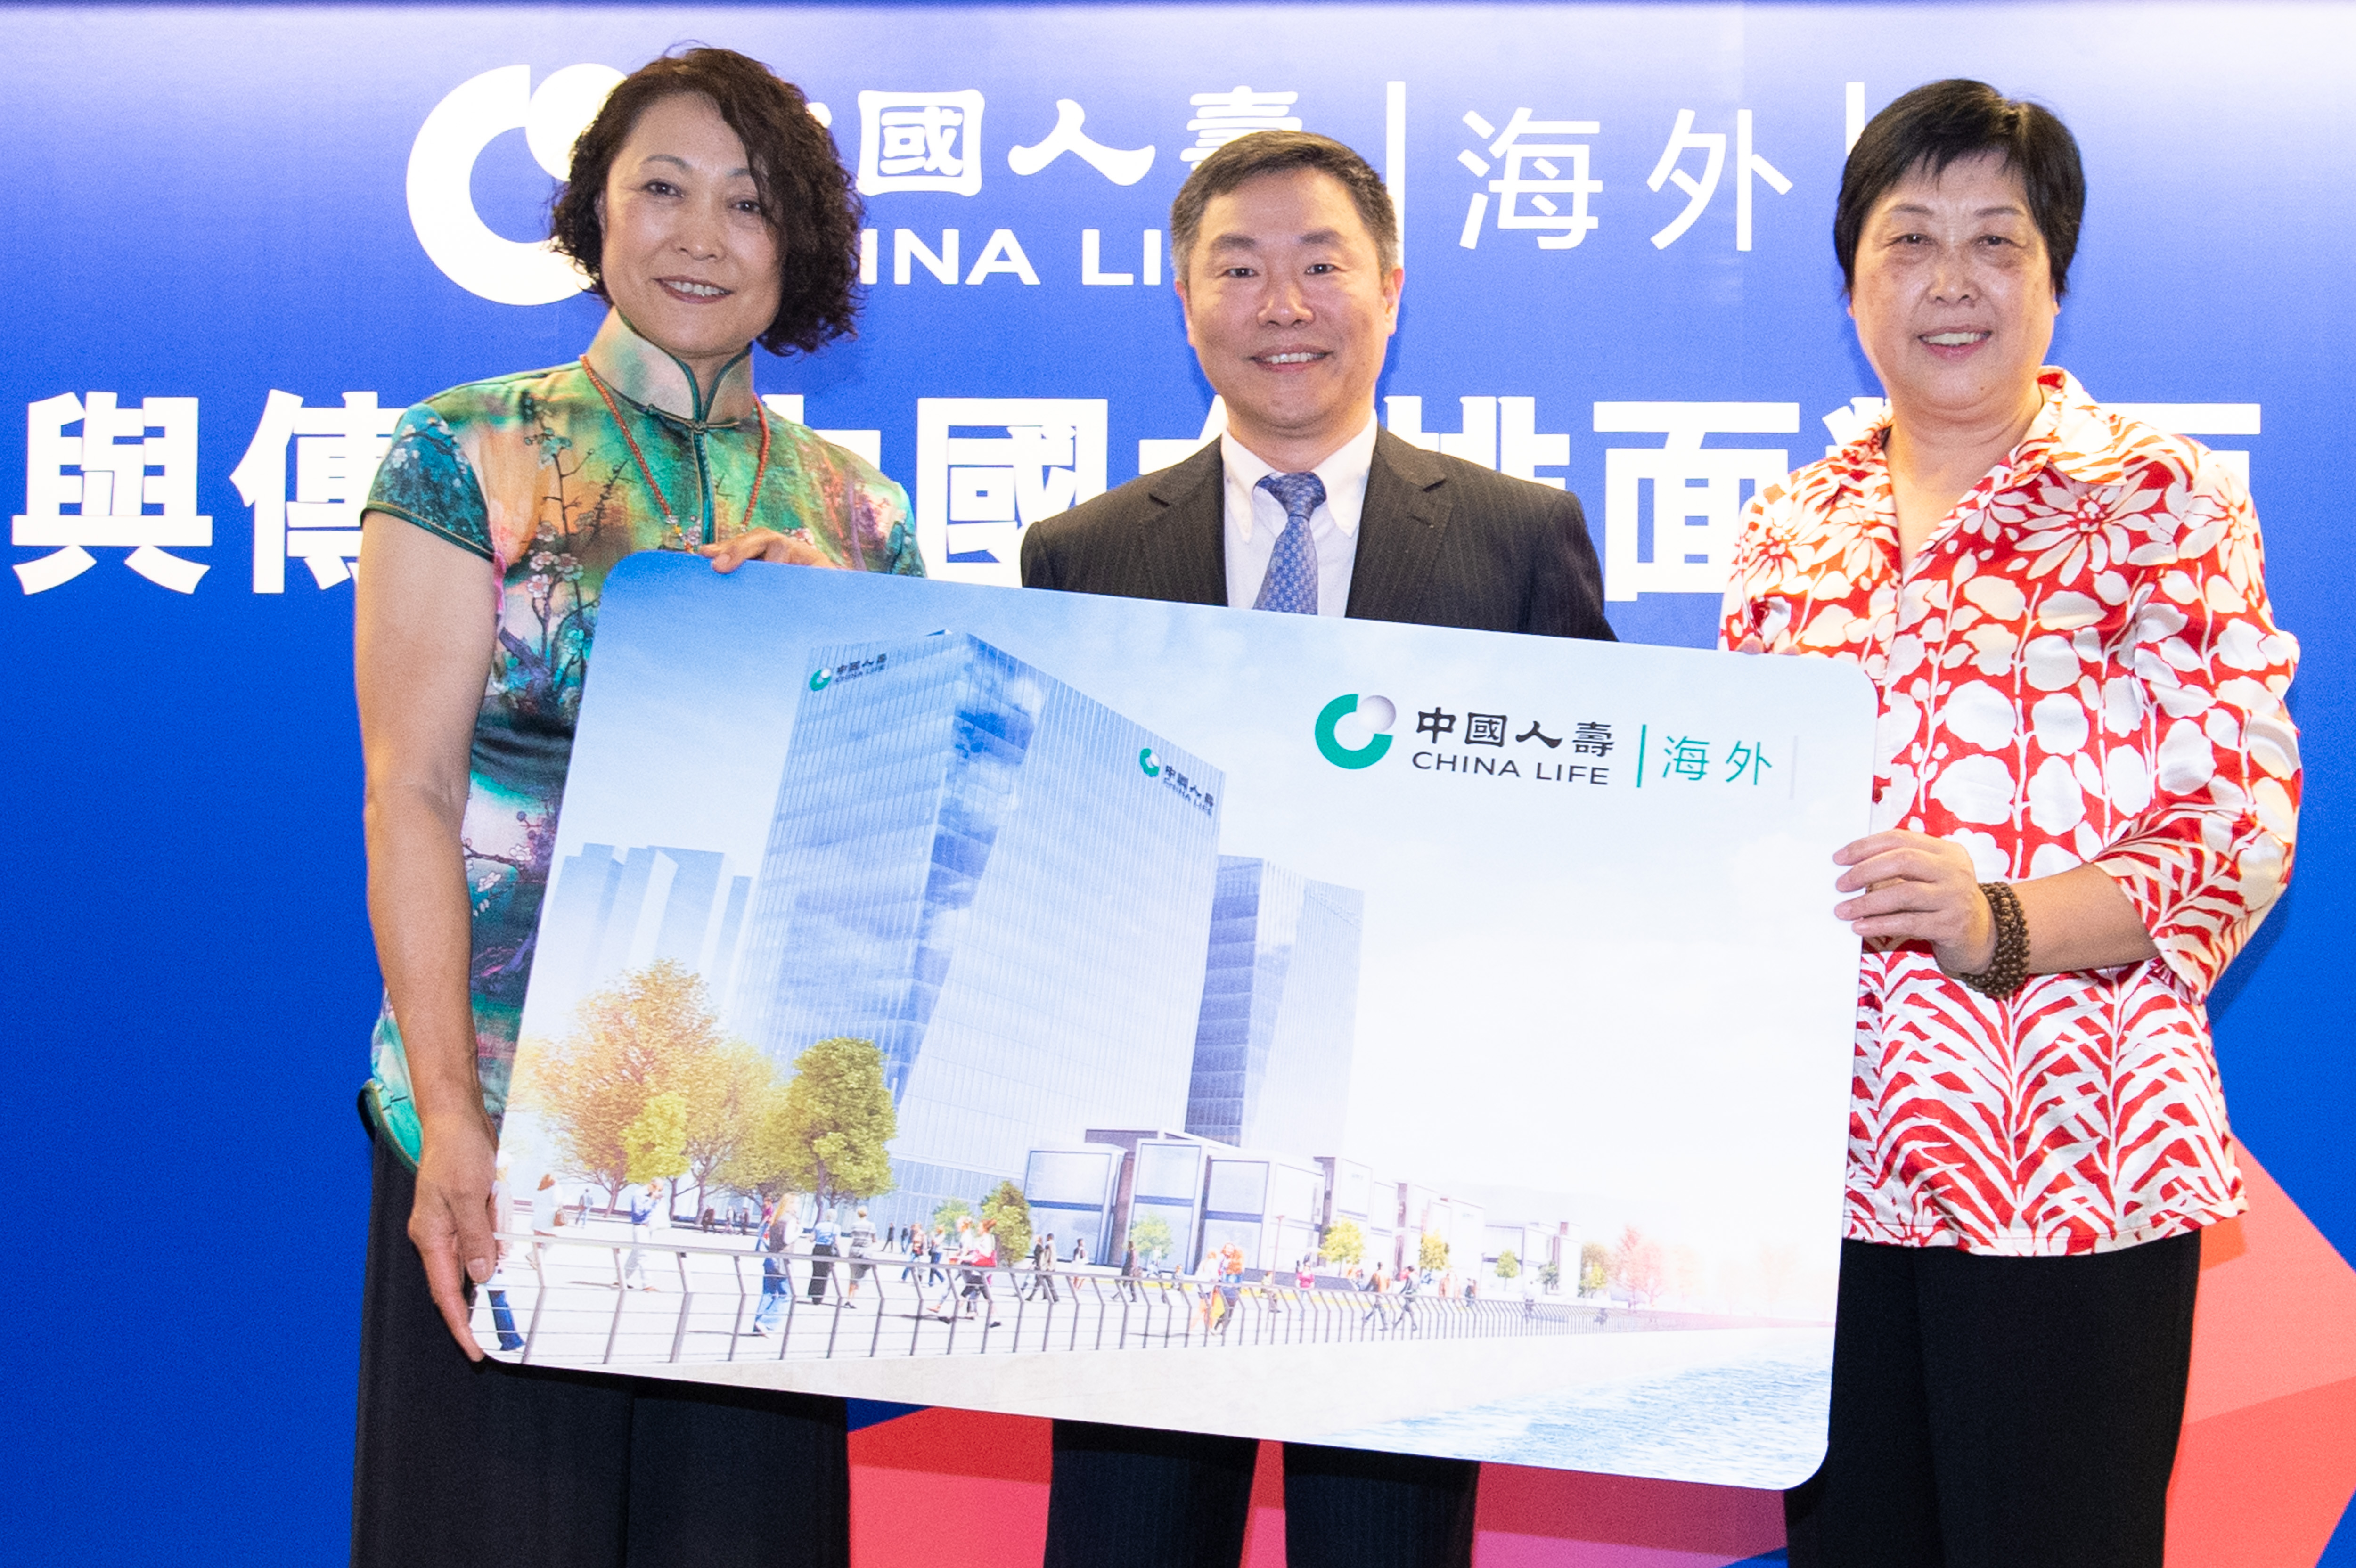 中国人寿(海外)全力支持「FIVB世界女排联赛香港2019」圆满结束，冠名赞助多项社区及宣传活动，庆祝集团公司70周年